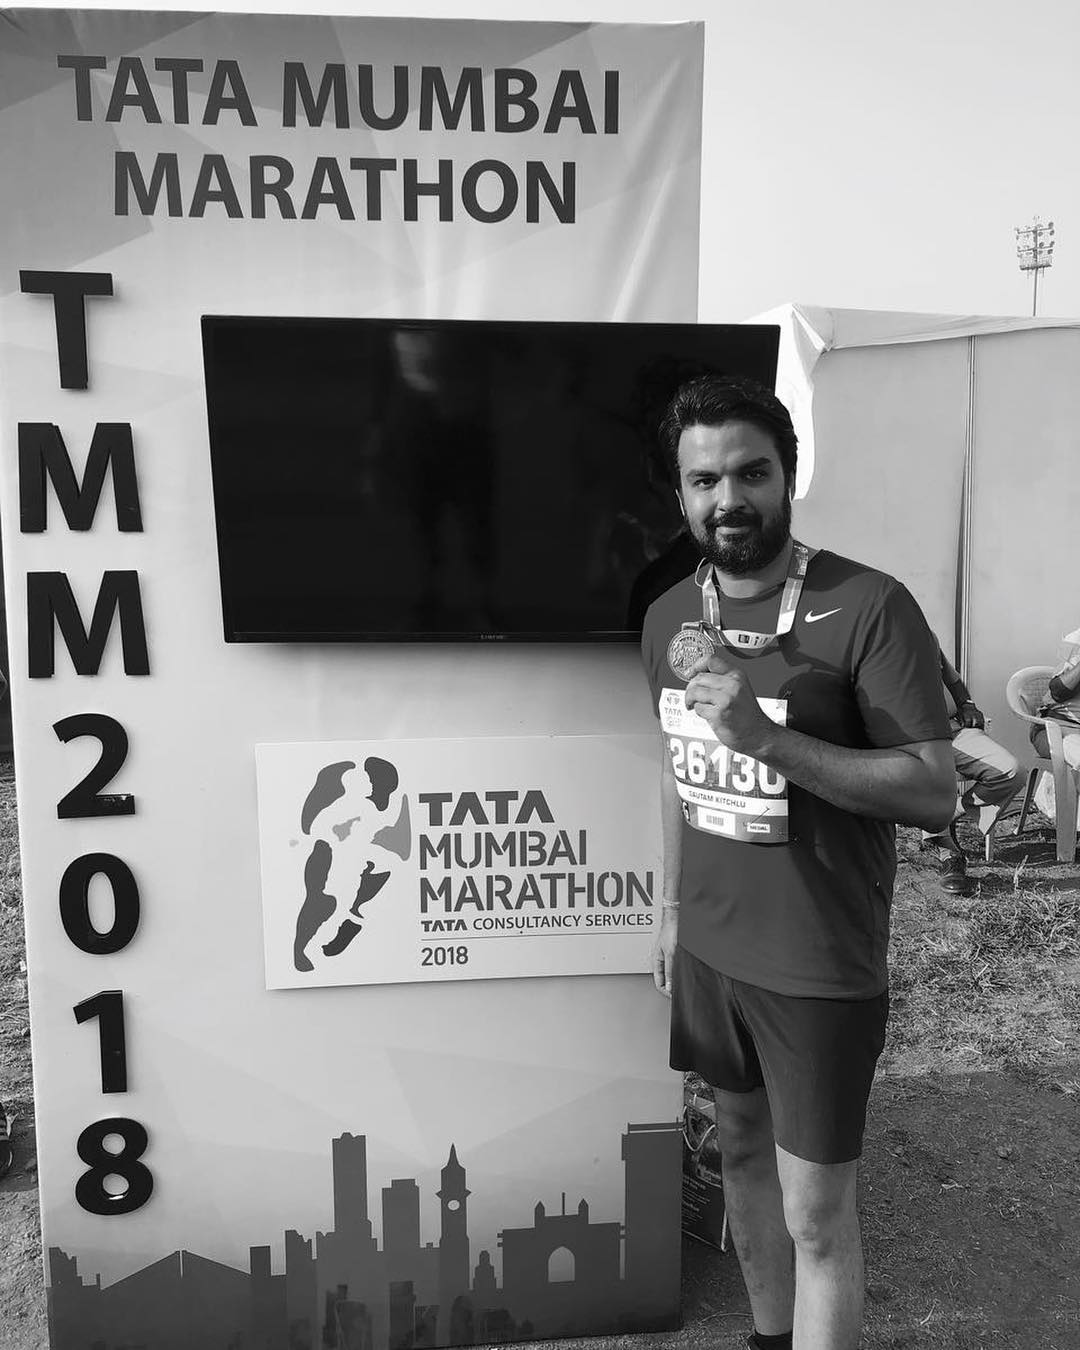 गौतम किचलू ने टाटा मुंबई मैराथन में भाग लिया 